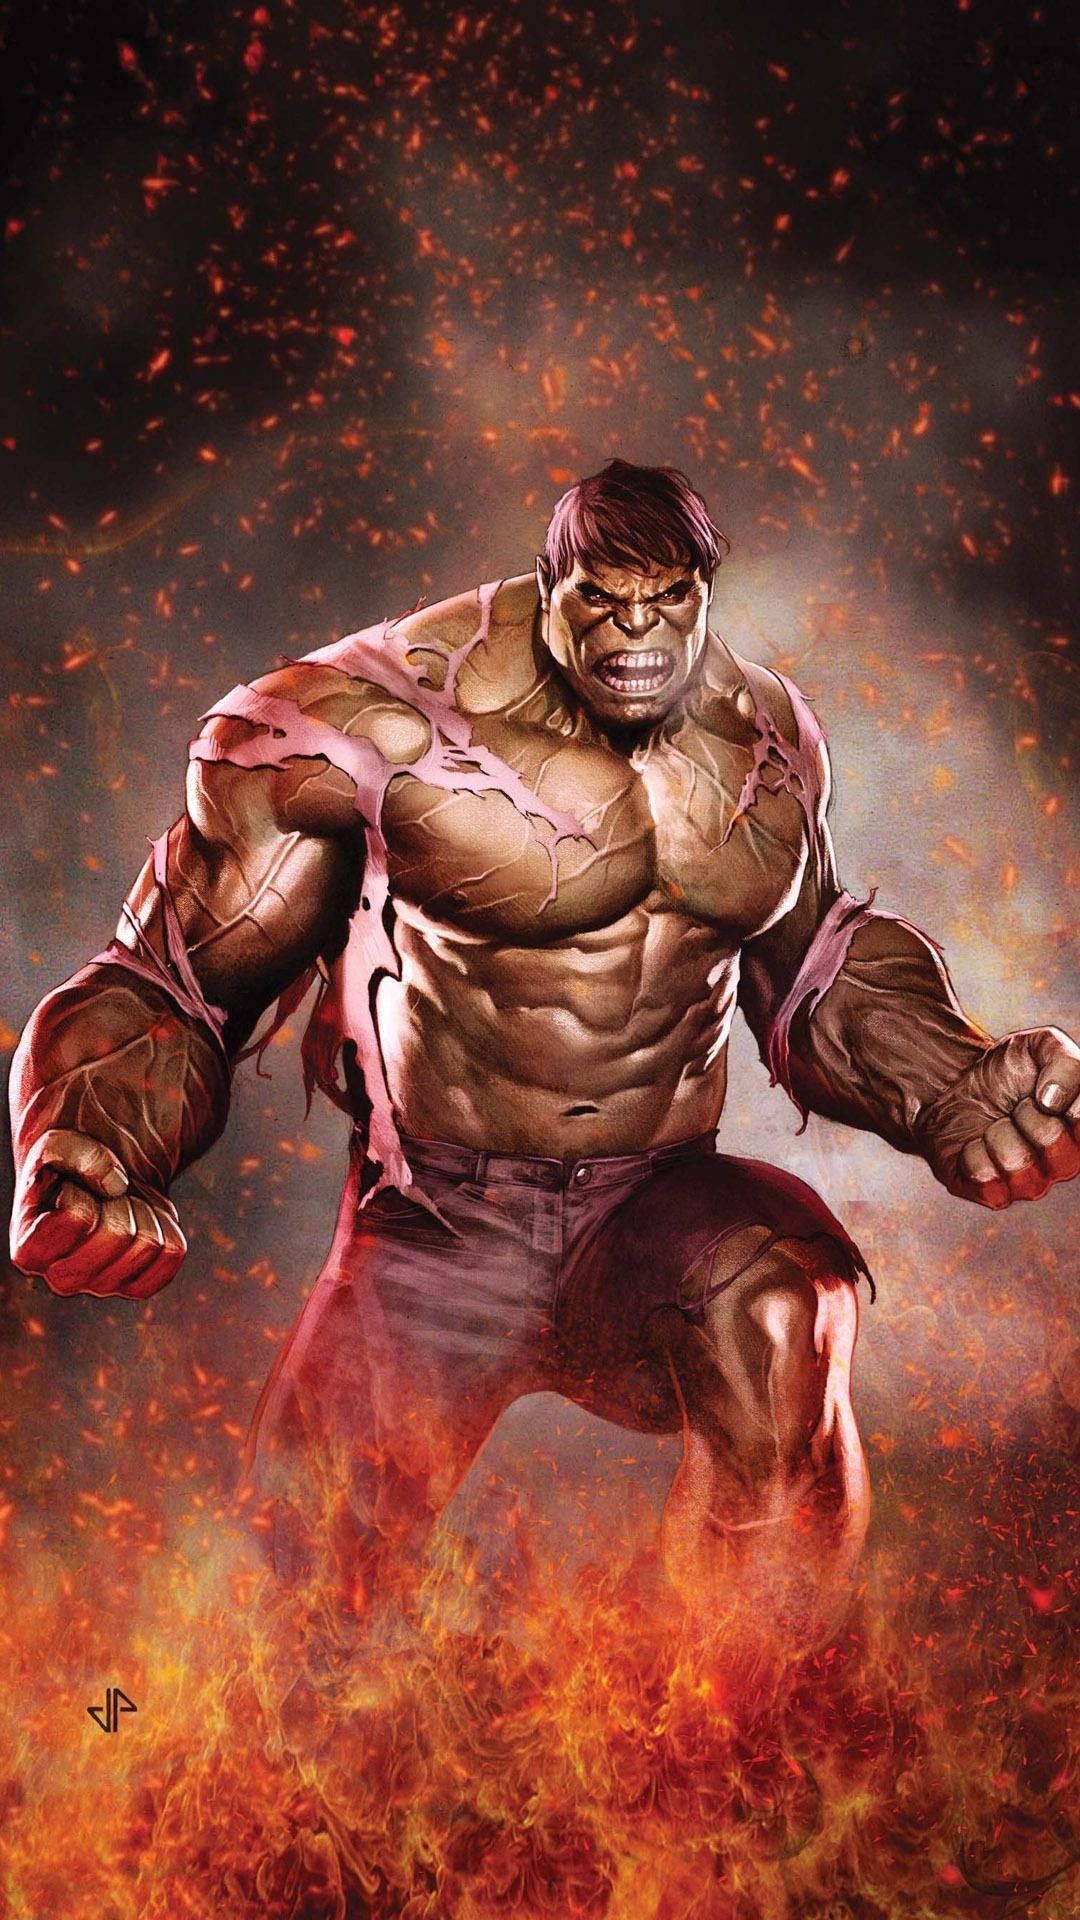 1080x1920 Incredible Hulk Wallpaper | Related Pictures the incredible hulk 2008 vs  hulk 2003